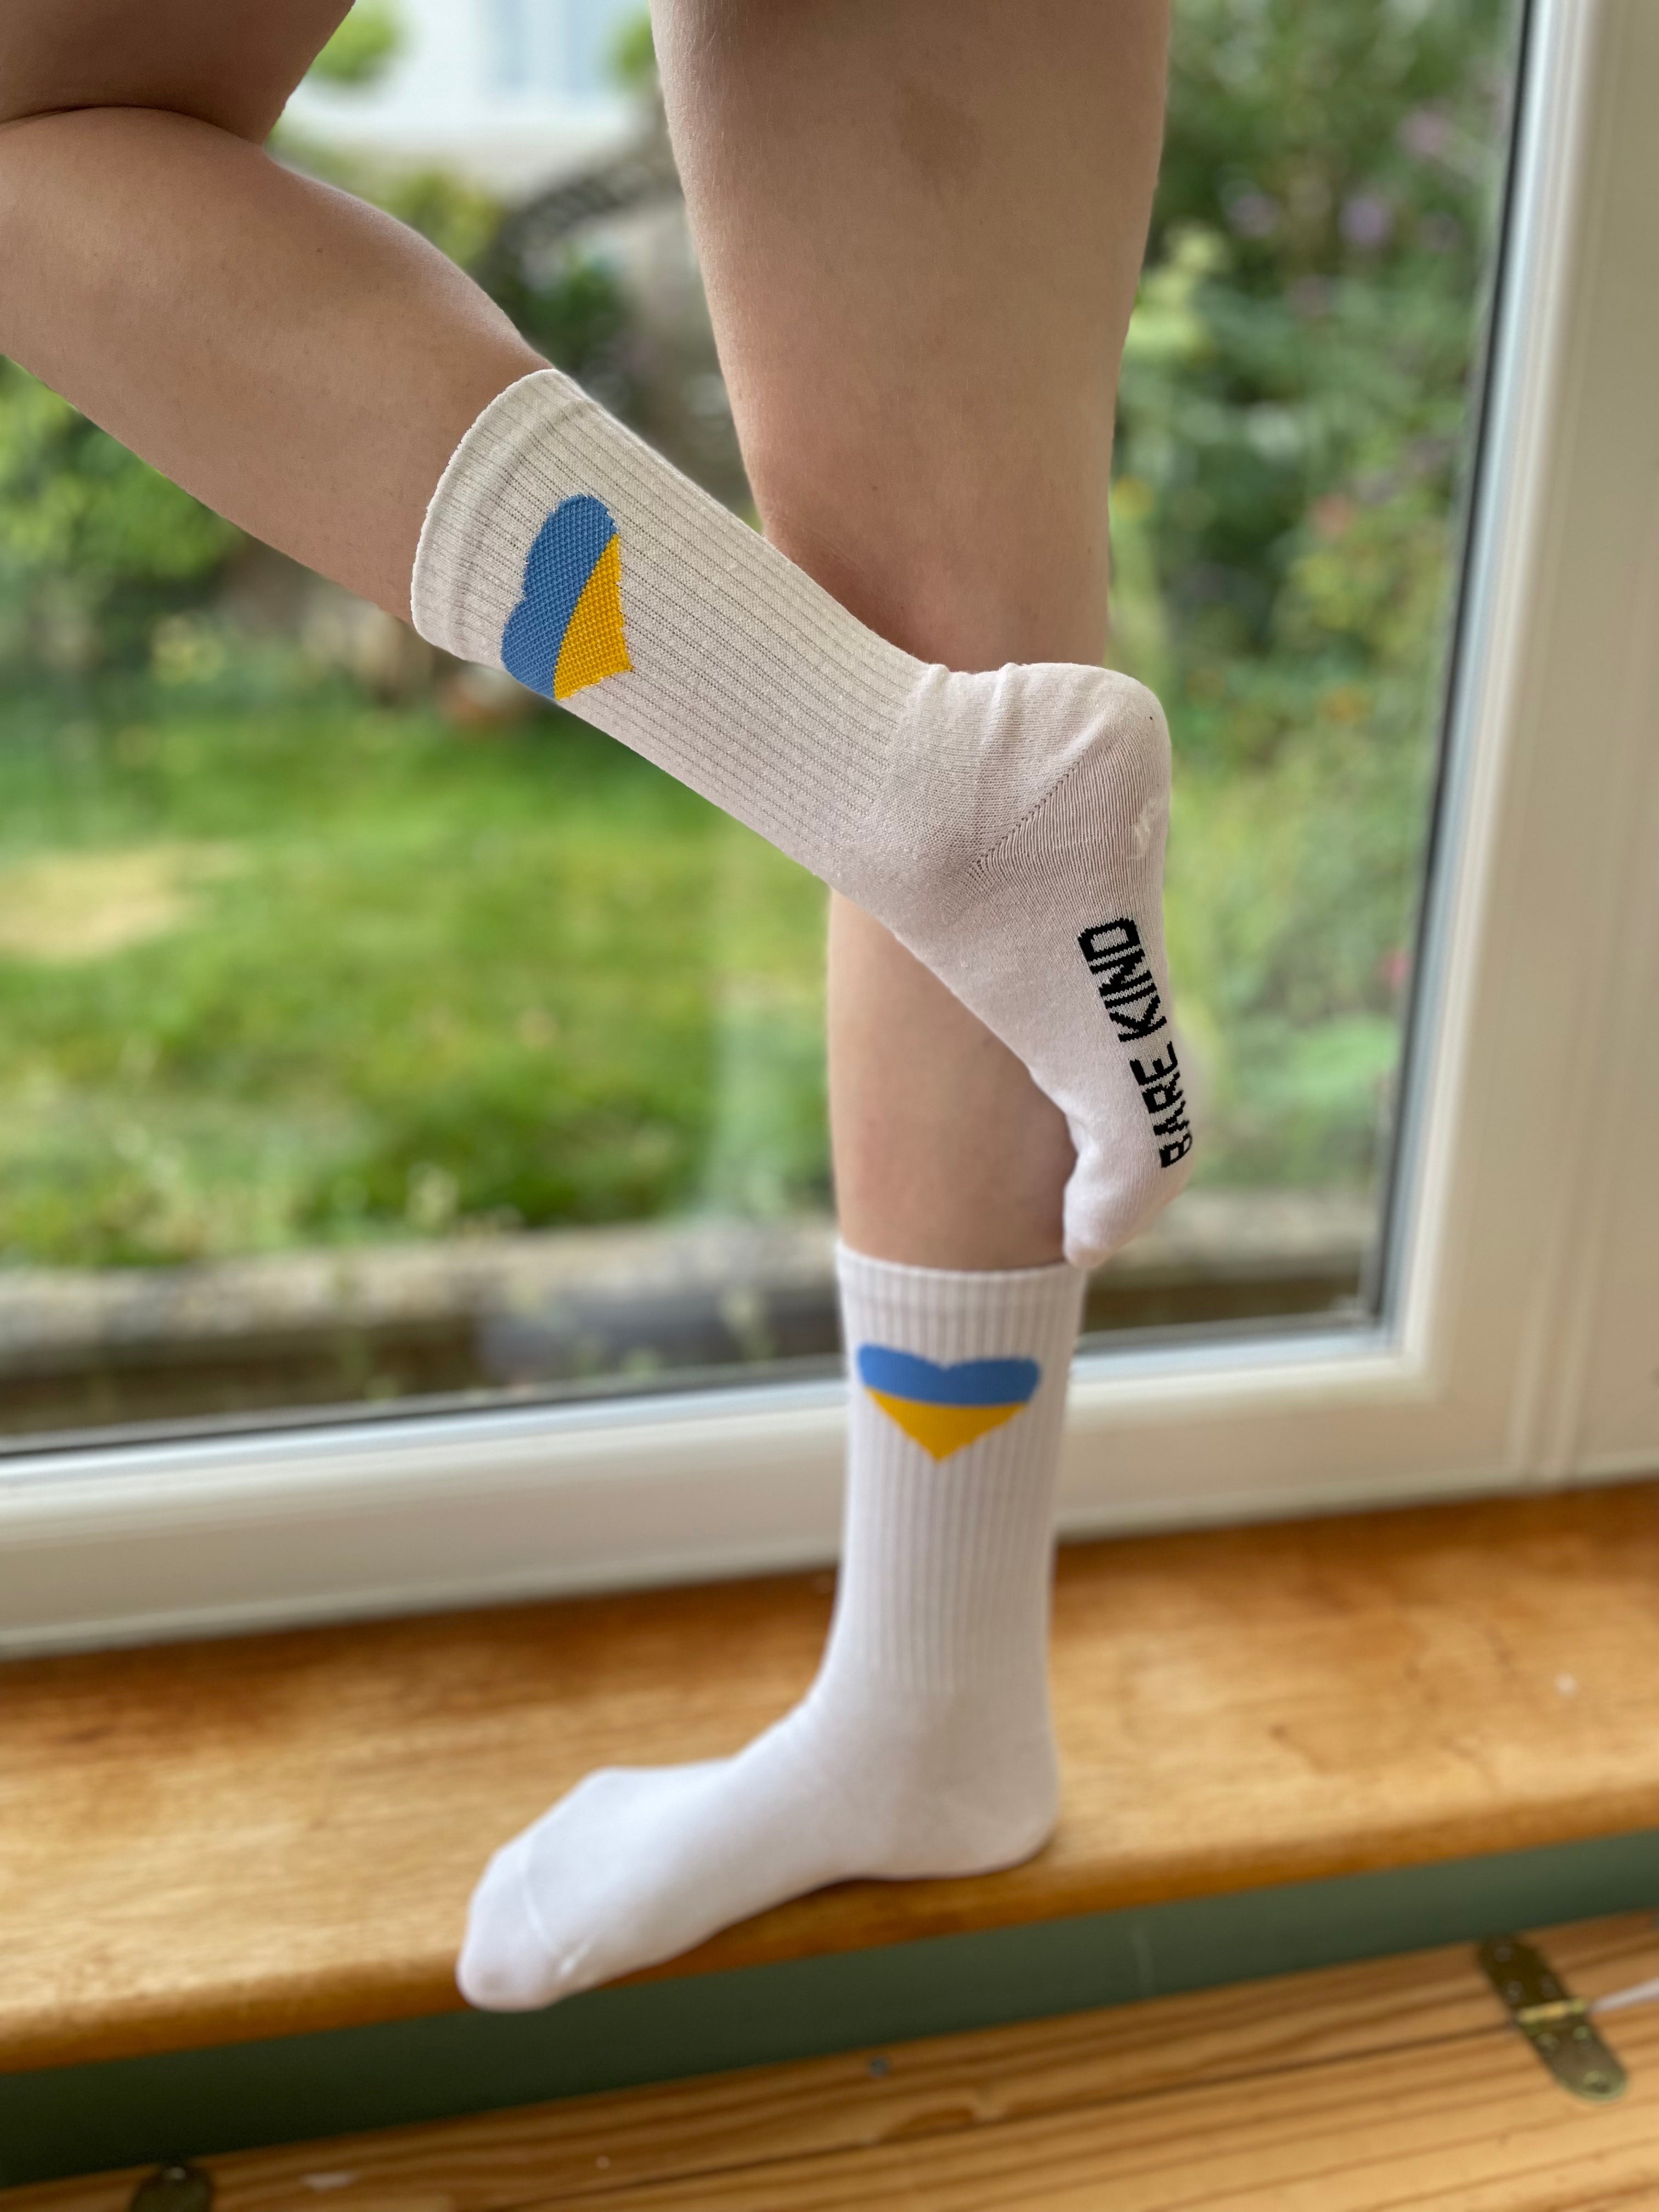 Ukraine Socks - Single Pair